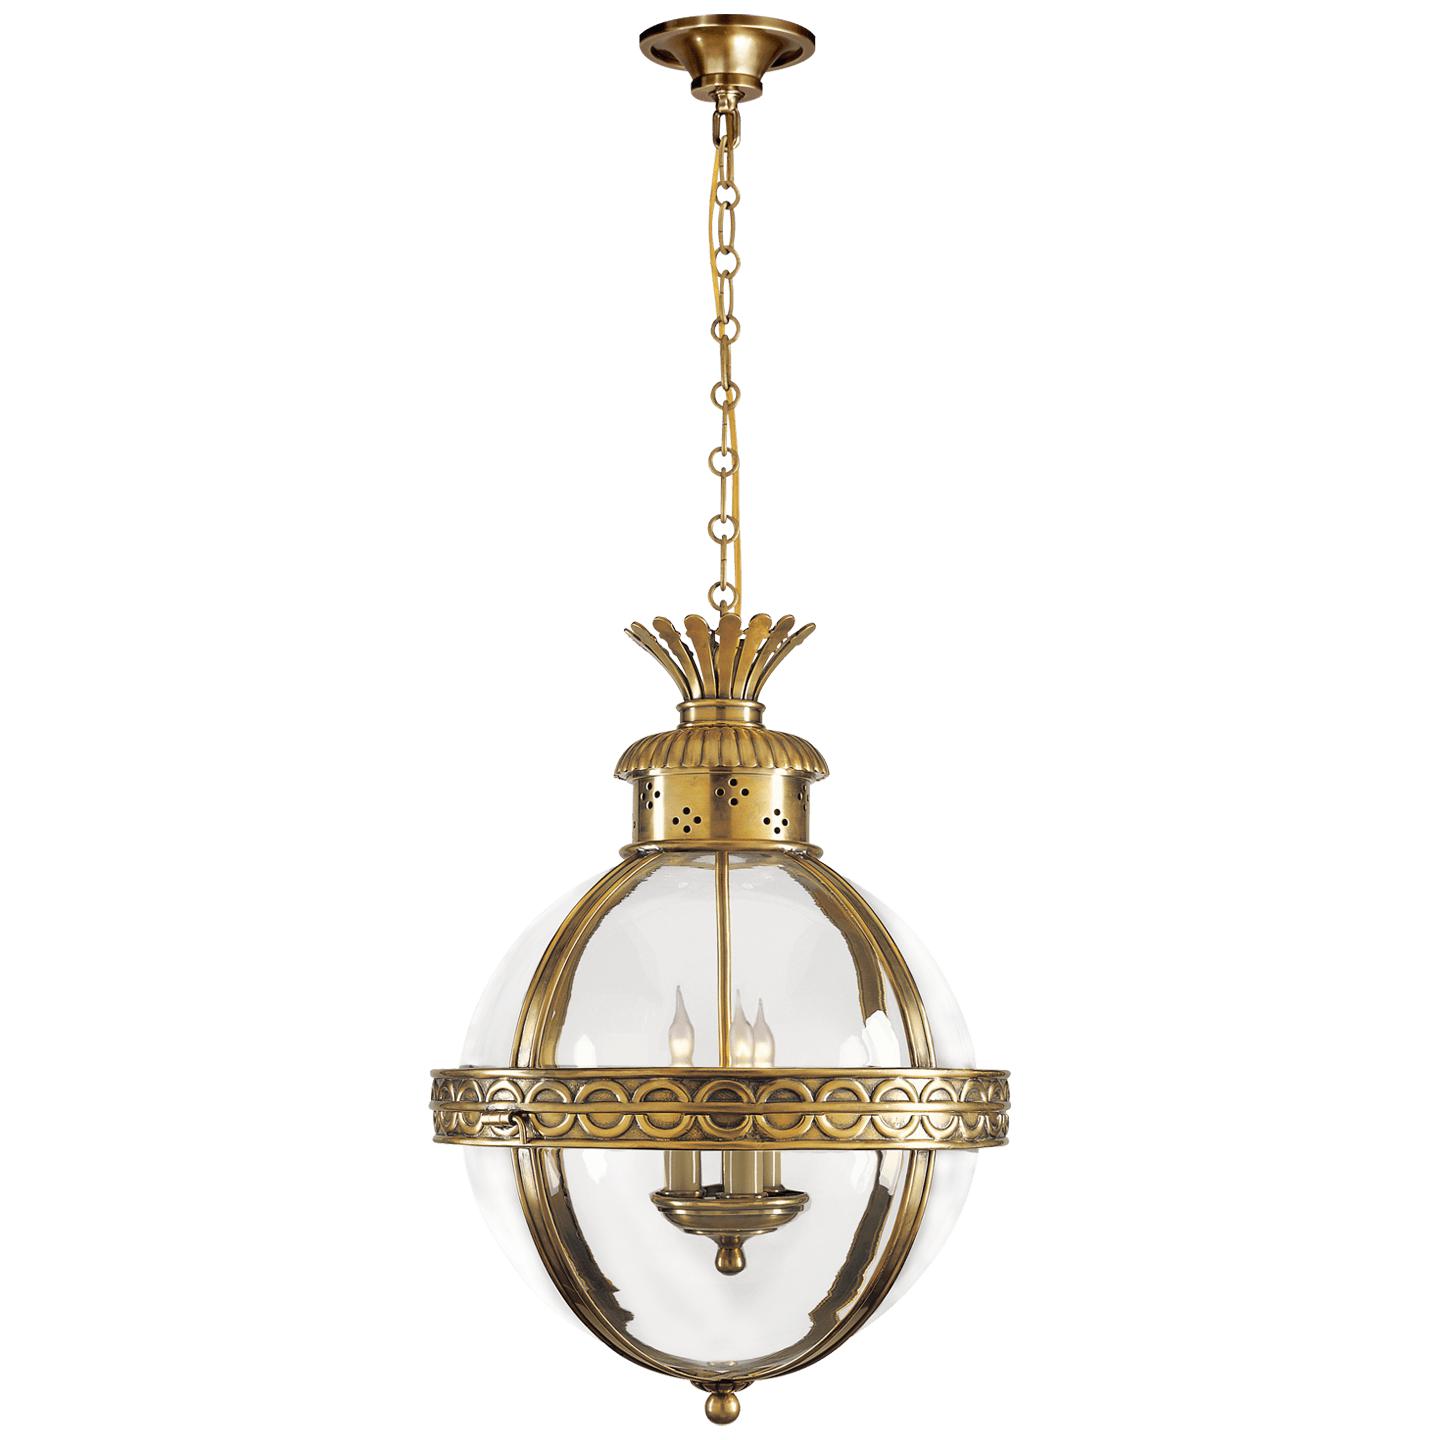 Купить Подвесной светильник Crown Top Banded Globe Lantern в интернет-магазине roooms.ru